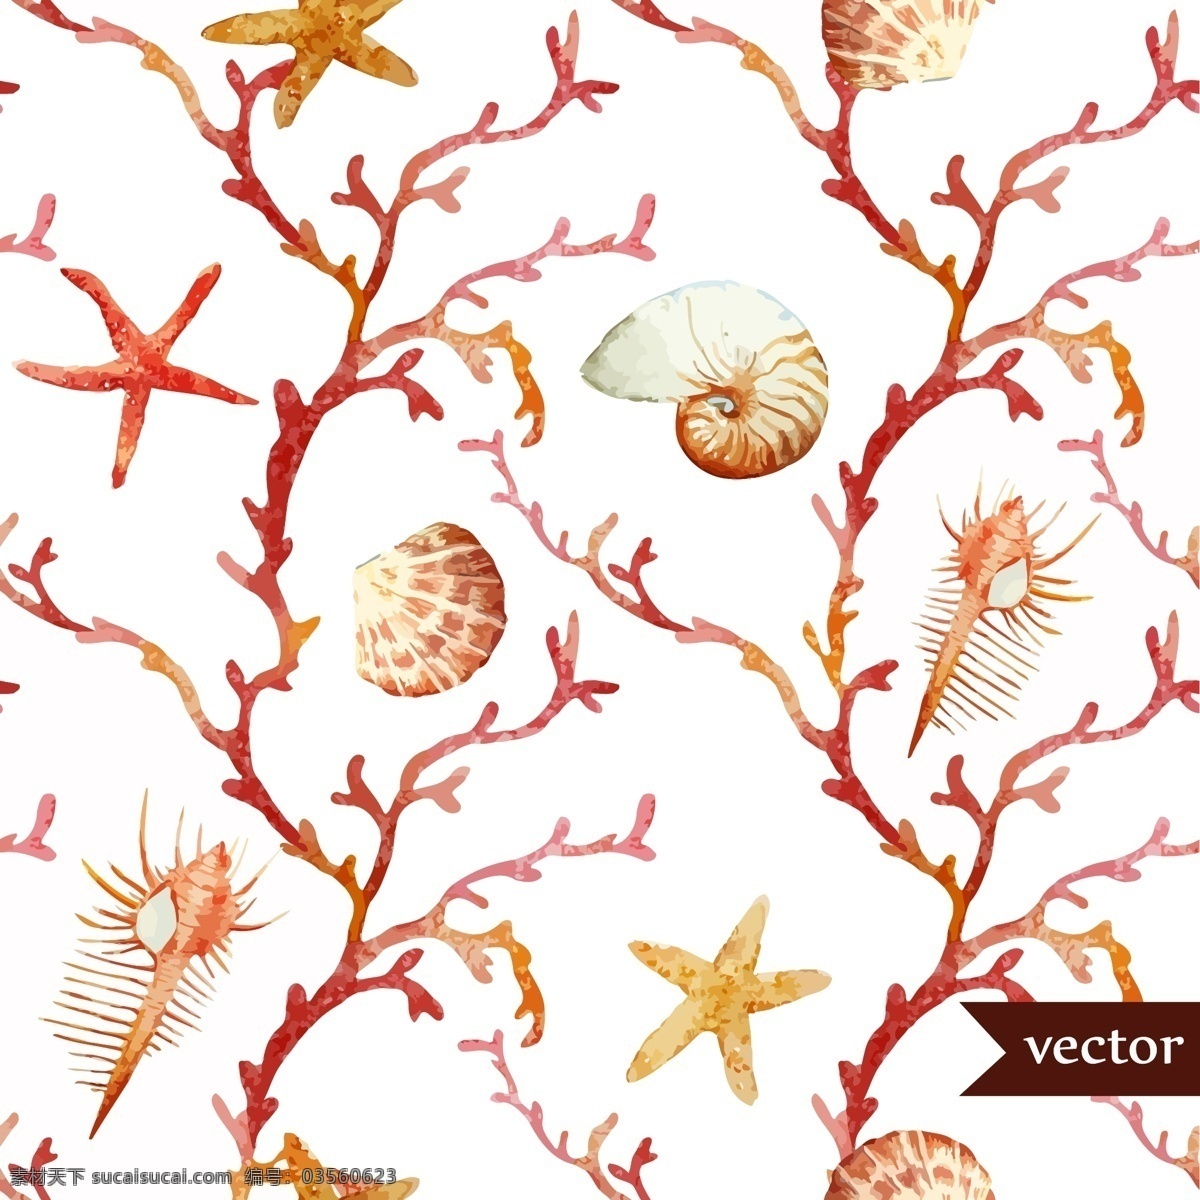 珊瑚 贝壳 水彩 夏日 海洋 动物 元素 夏天 度假 包装 封面 创意 涂鸦 小清新 卡通 填充 插画 背景 海报 广告 印刷